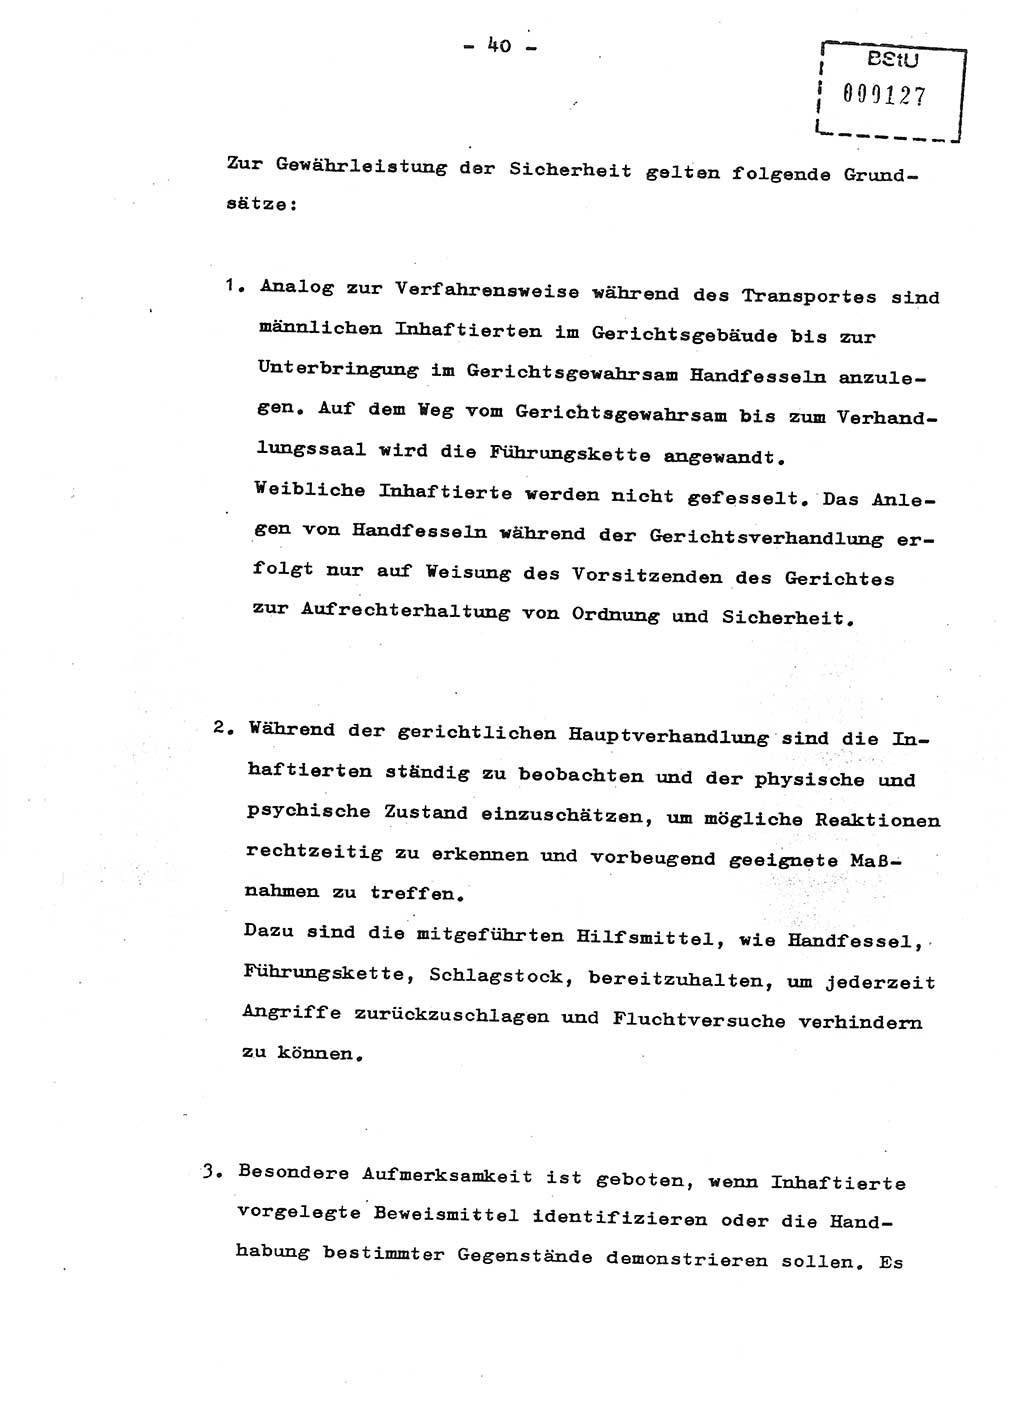 Schulungsmaterial Exemplar-Nr.: 8, Ministerium für Staatssicherheit [Deutsche Demokratische Republik (DDR)], Abteilung (Abt.) ⅩⅣ, Berlin 1987, Seite 40 (Sch.-Mat. Expl. 8 MfS DDR Abt. ⅩⅣ /87 1987, S. 40)